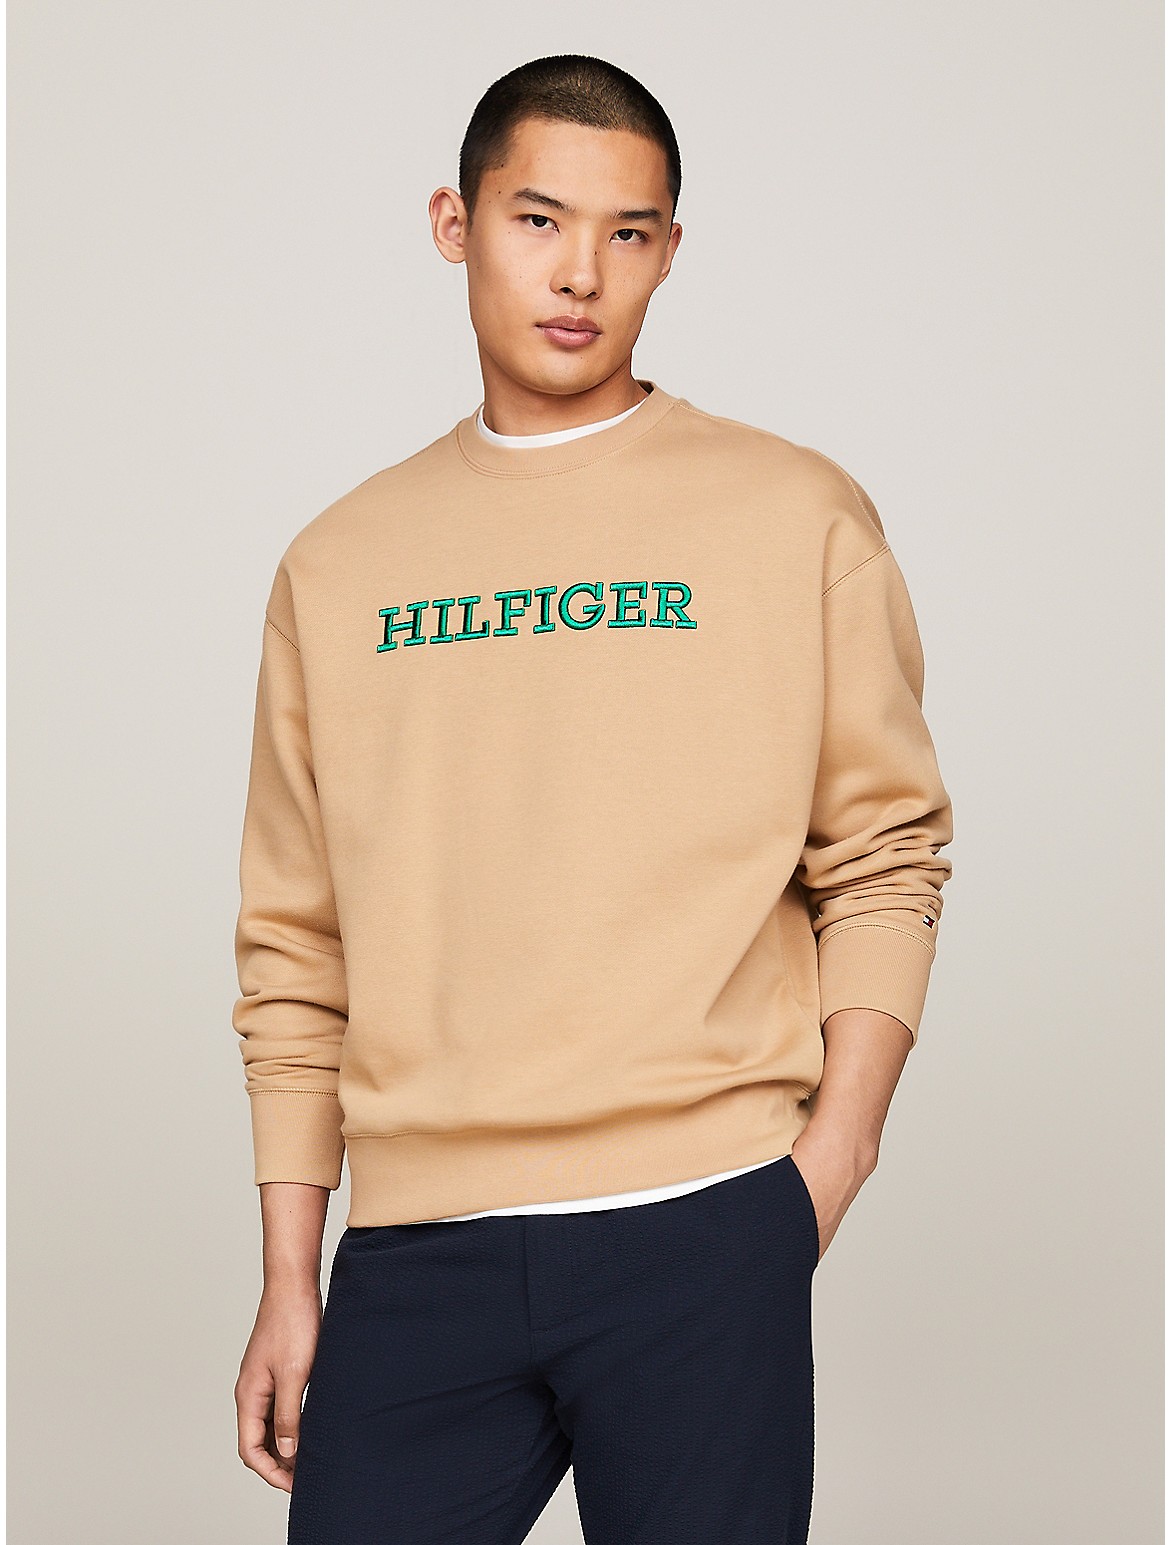 Tommy Hilfiger Men's Embroidered Monotype Cotton Sweatshirt